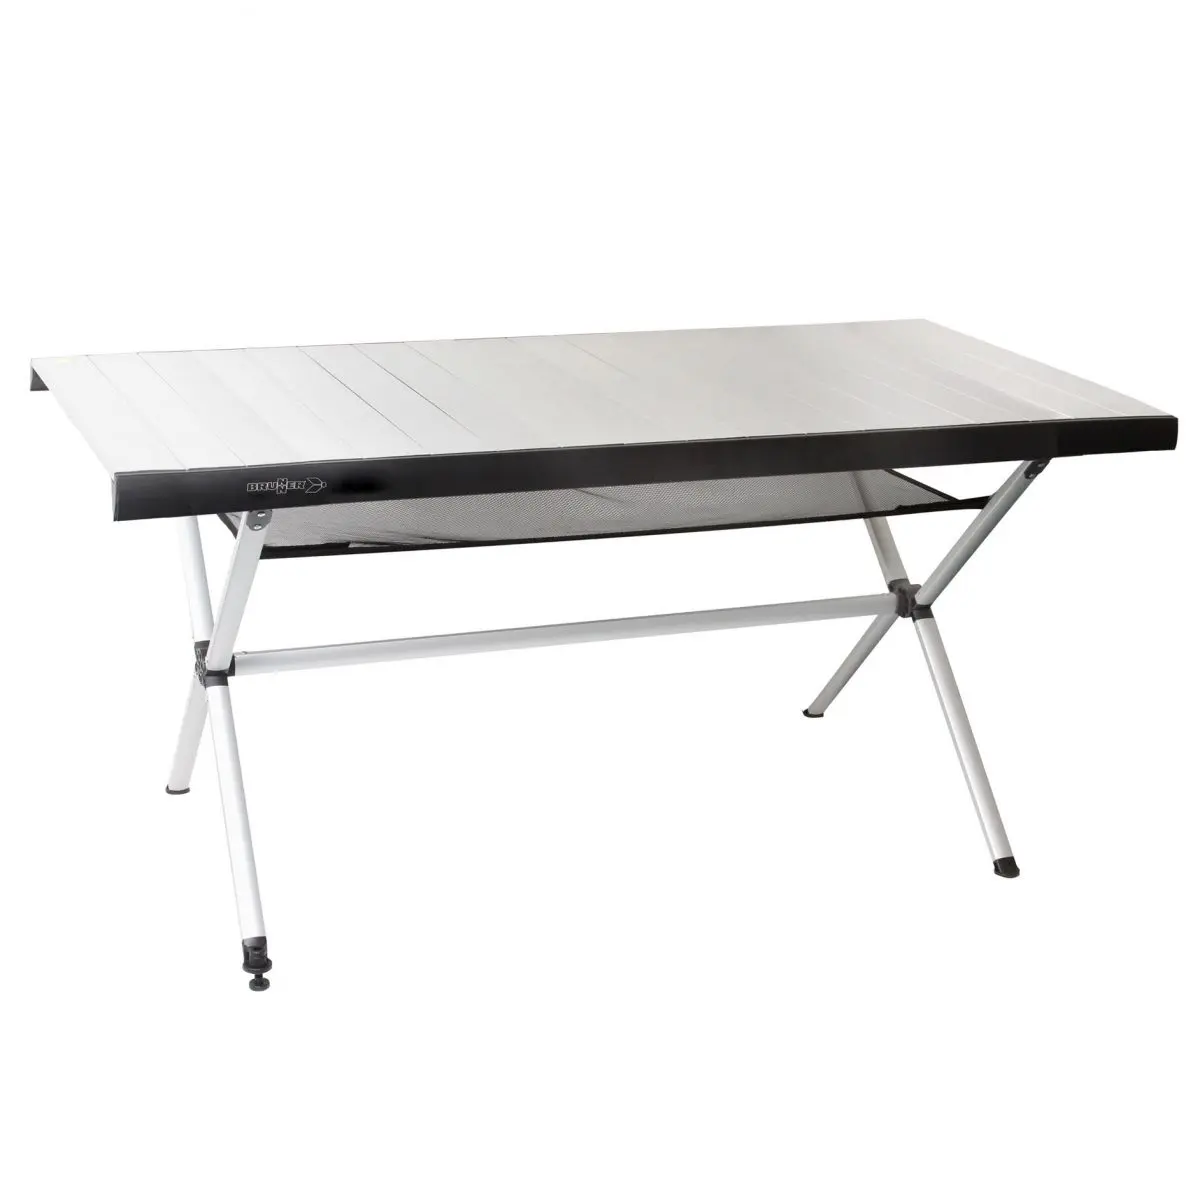 Accelerate kerekes asztal - 146,5 x 71 x 80 cm